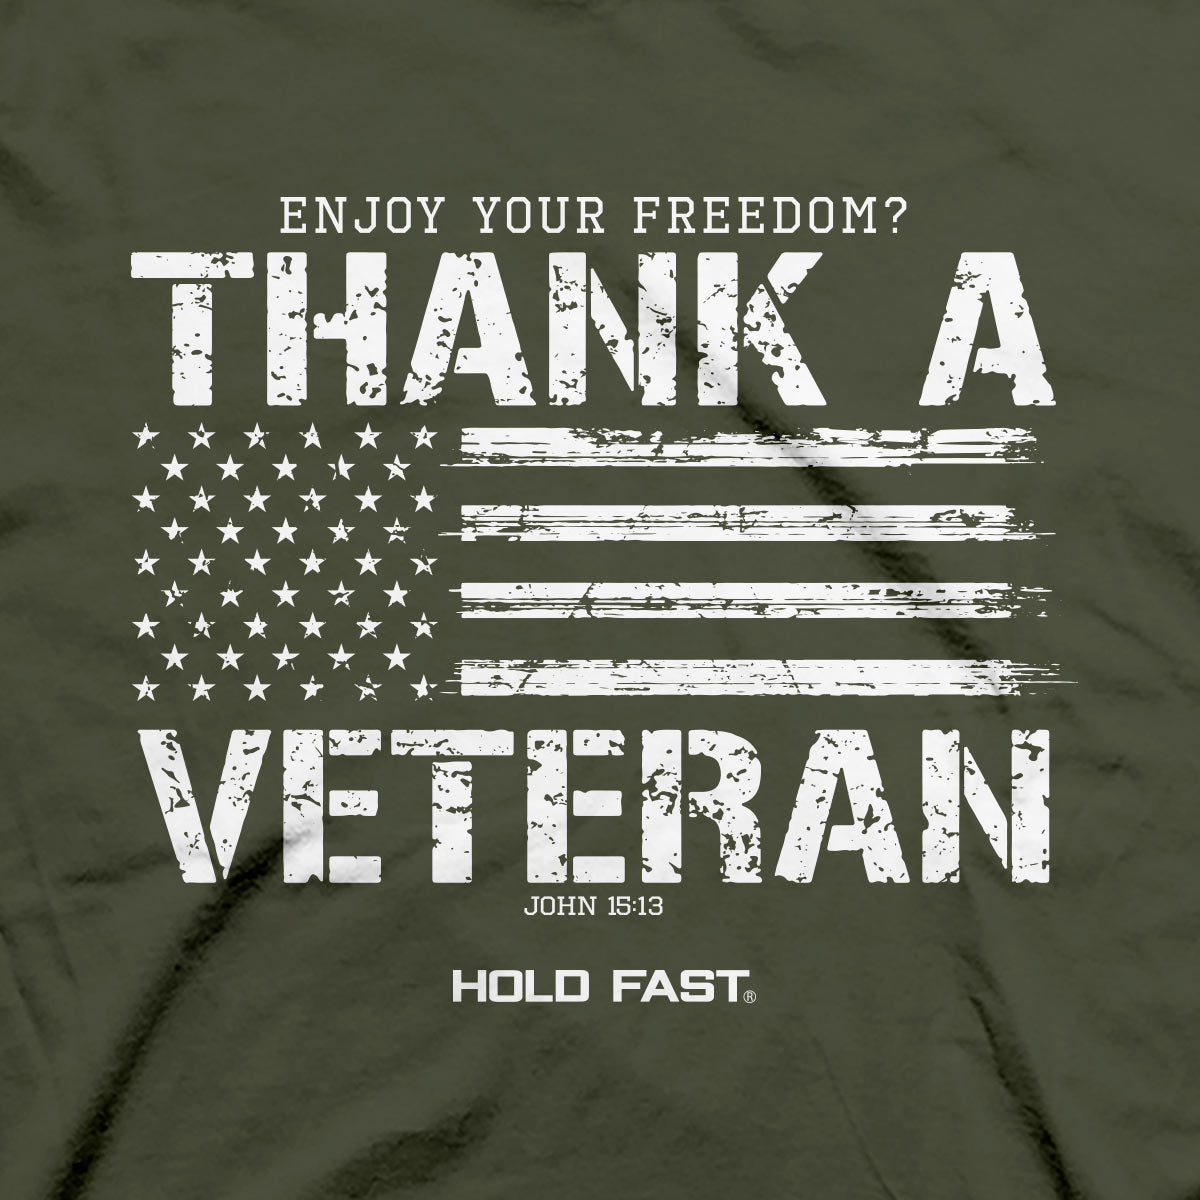 HOLD FAST Mens T-Shirt Thank A Veteran | 2FruitBearers